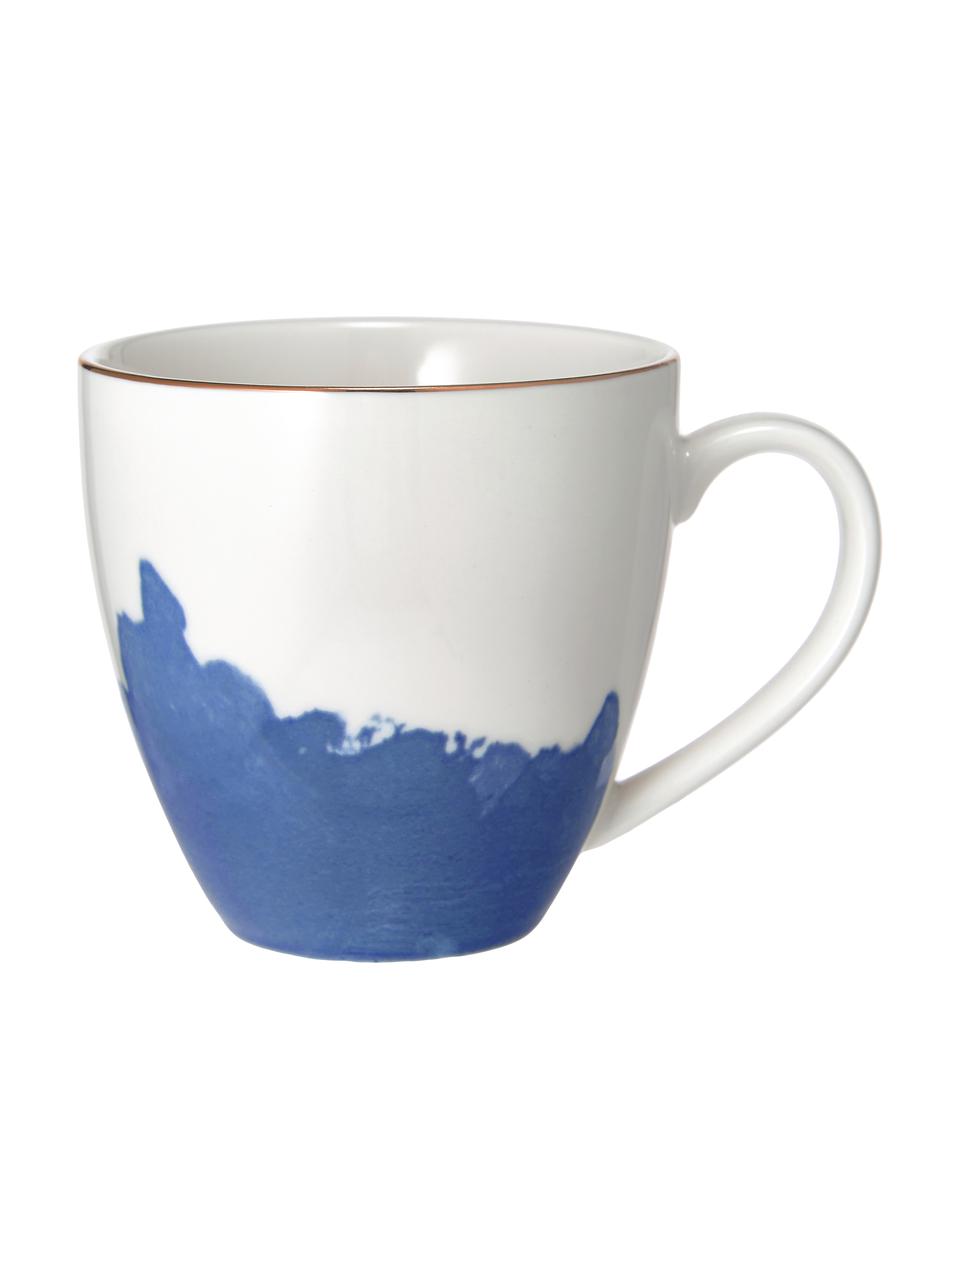 Filiżanka do kawy z porcelany Rosie, 2 szt., Porcelana, Biały, niebieski, Ø 12 x W 9 cm